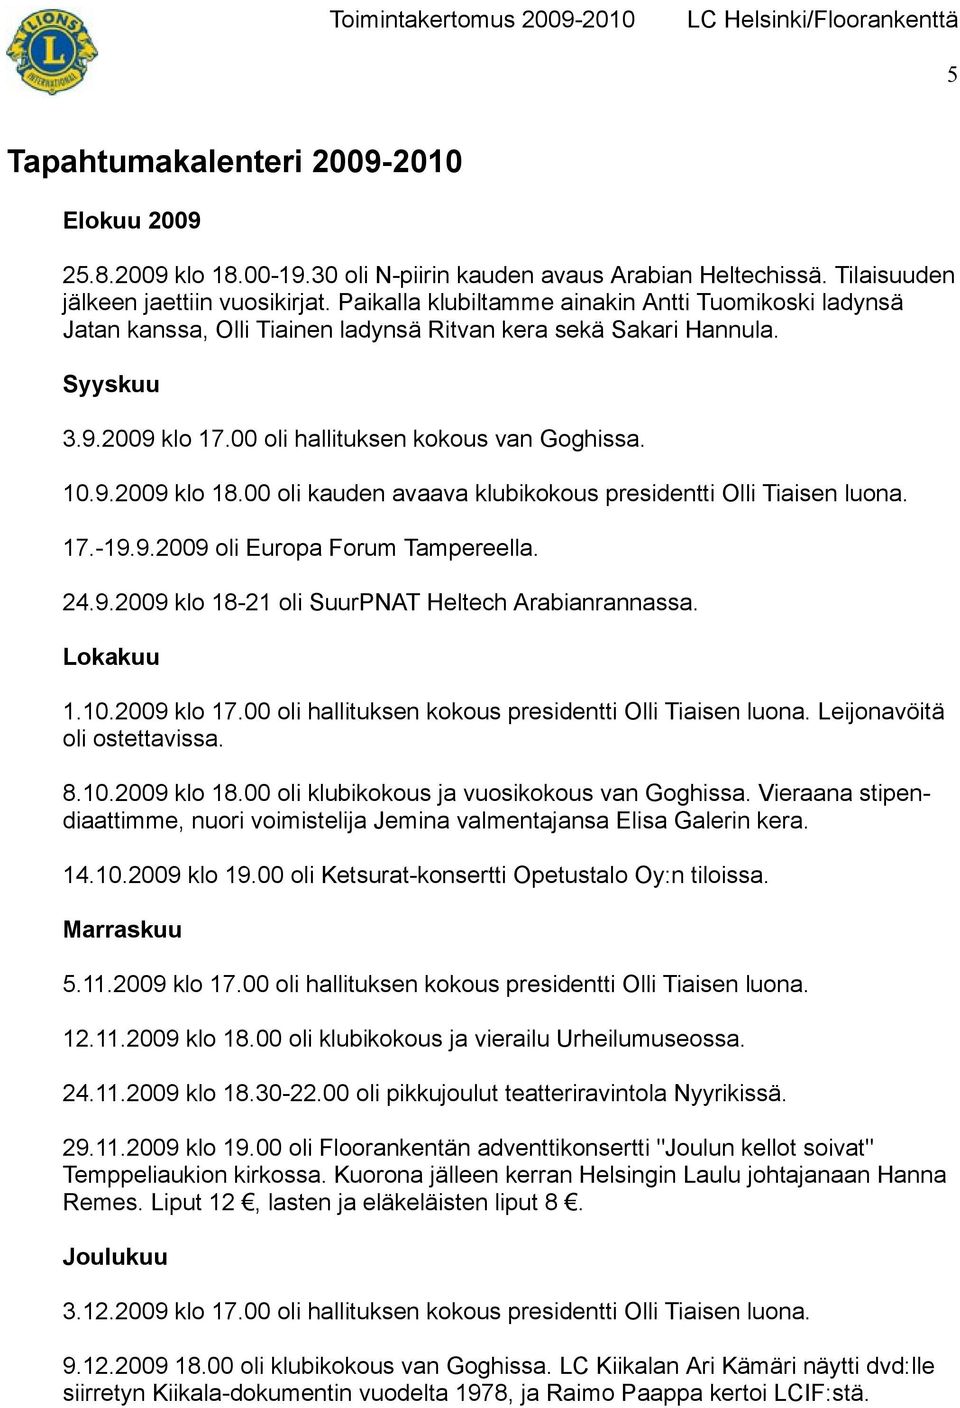 00 oli kauden avaava klubikokous presidentti Olli Tiaisen luona. 17.-19.9.2009 oli Europa Forum Tampereella. 24.9.2009 klo 18-21 oli SuurPNAT Heltech Arabianrannassa. Lokakuu 1.10.2009 klo 17.